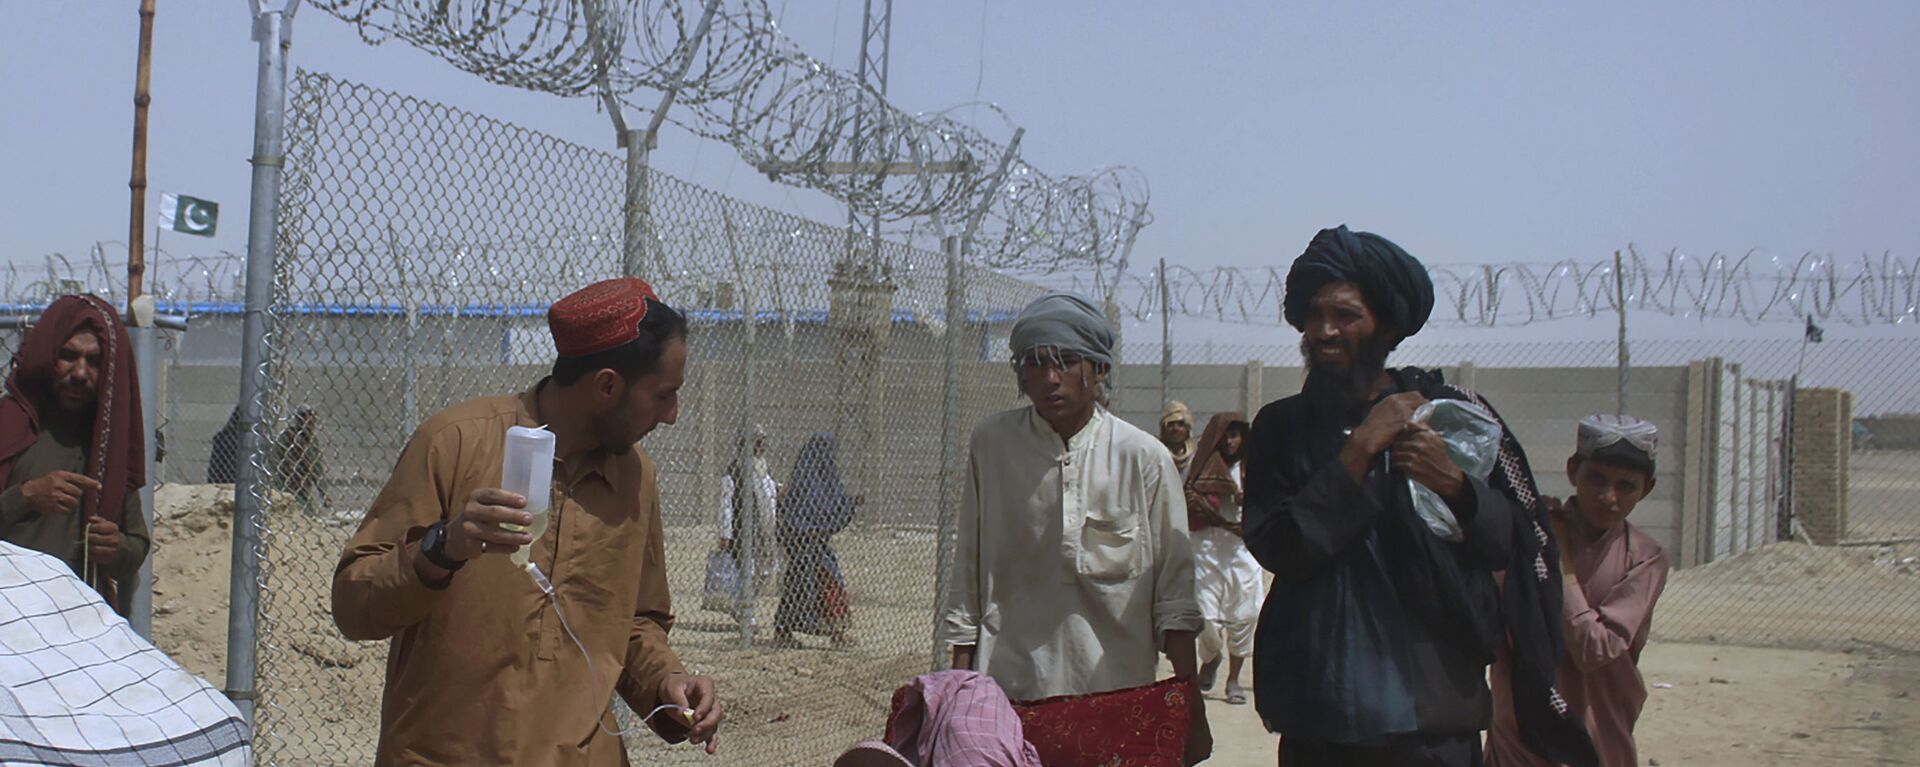 Афганские беженцы въезжают в Пакистан через пограничный переход в Чамане - Sputnik Таджикистан, 1920, 26.08.2021